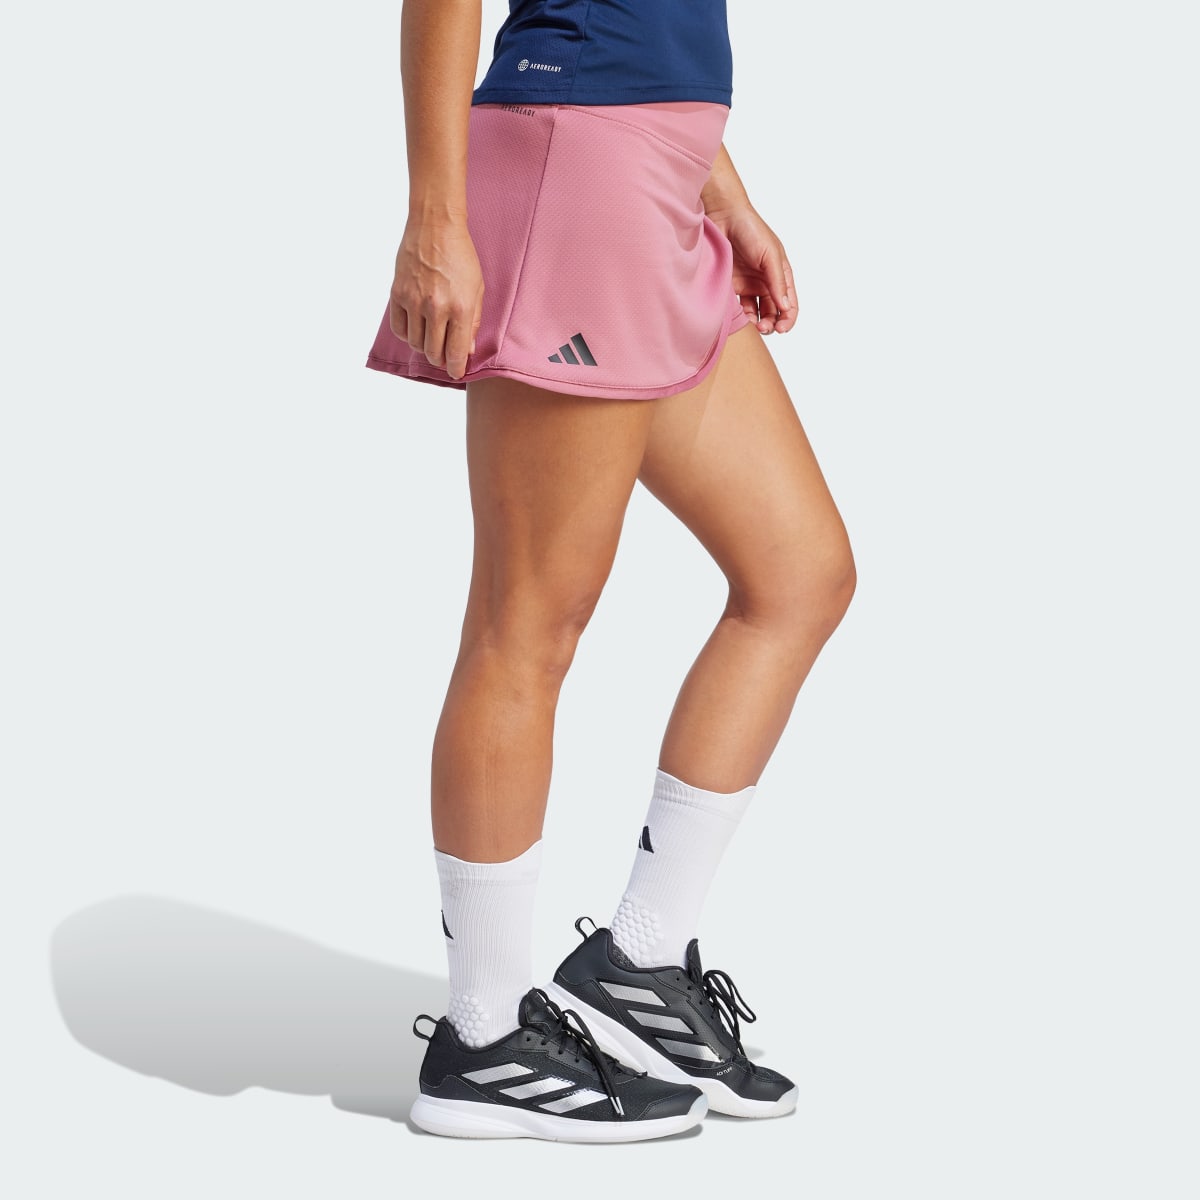 Adidas Club Tennis Skirt. 4